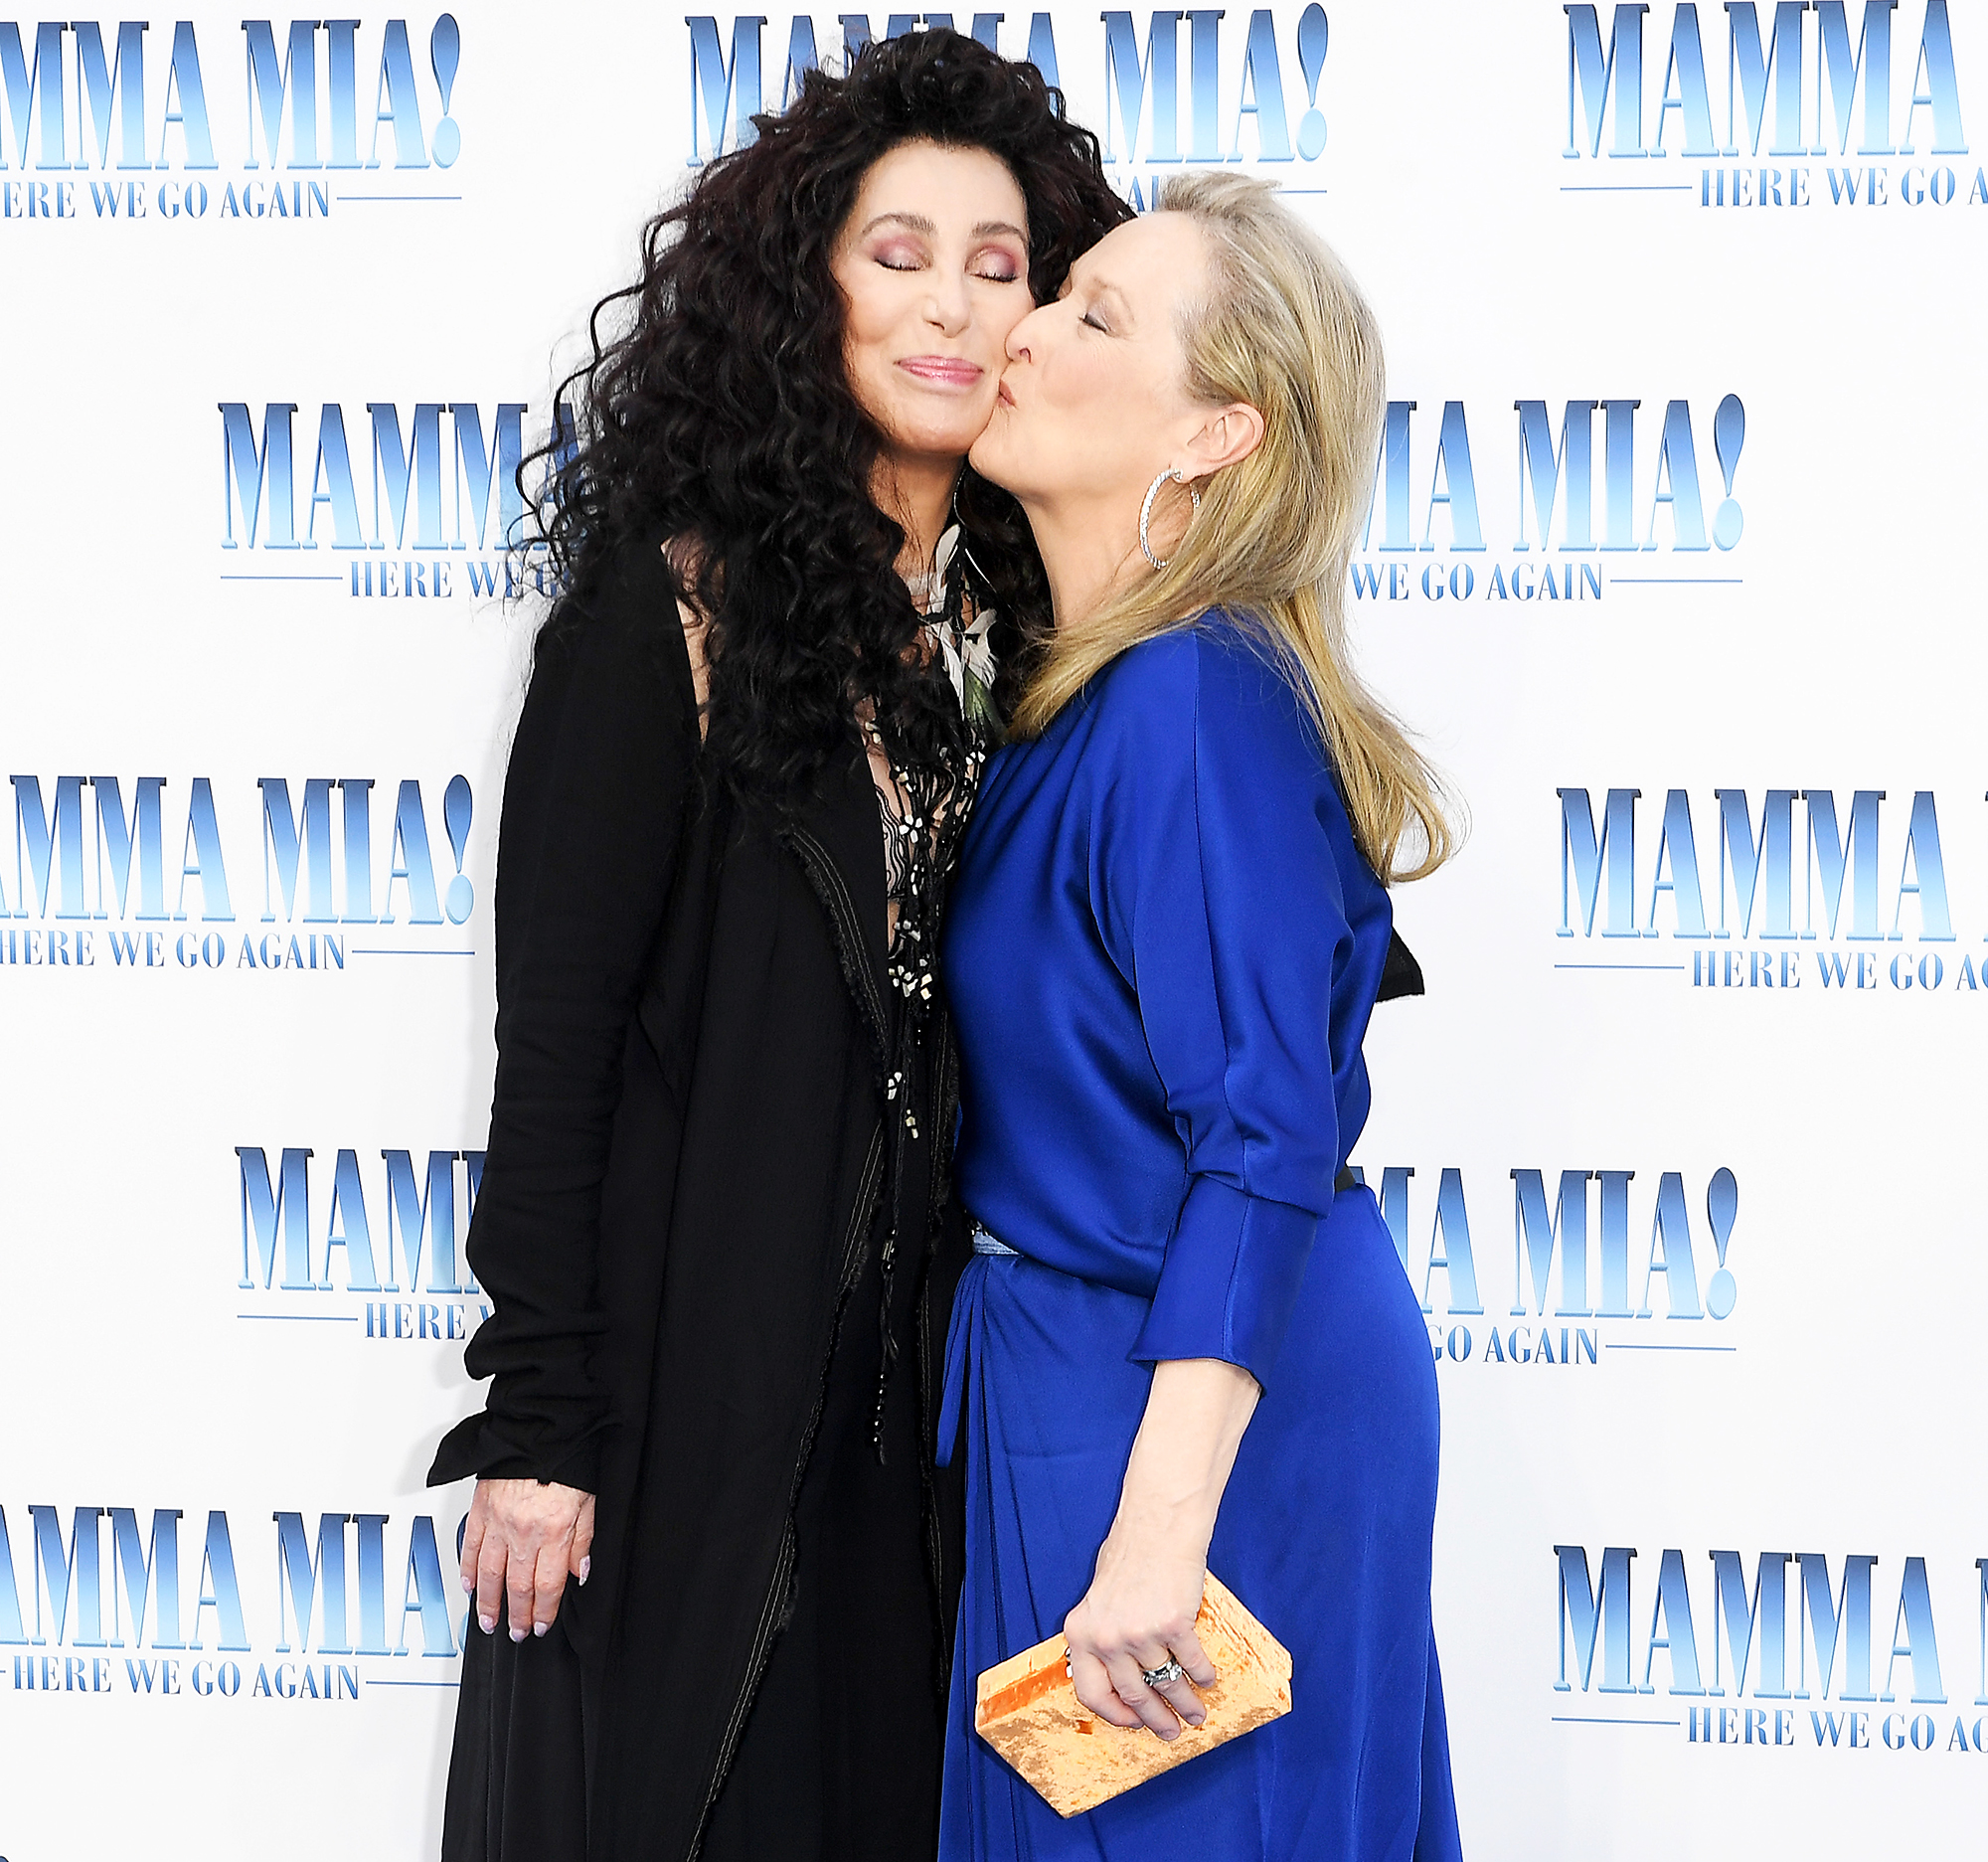 Cher Meryl Streep Kiss At Mamma Mia 2 Premiere Pics